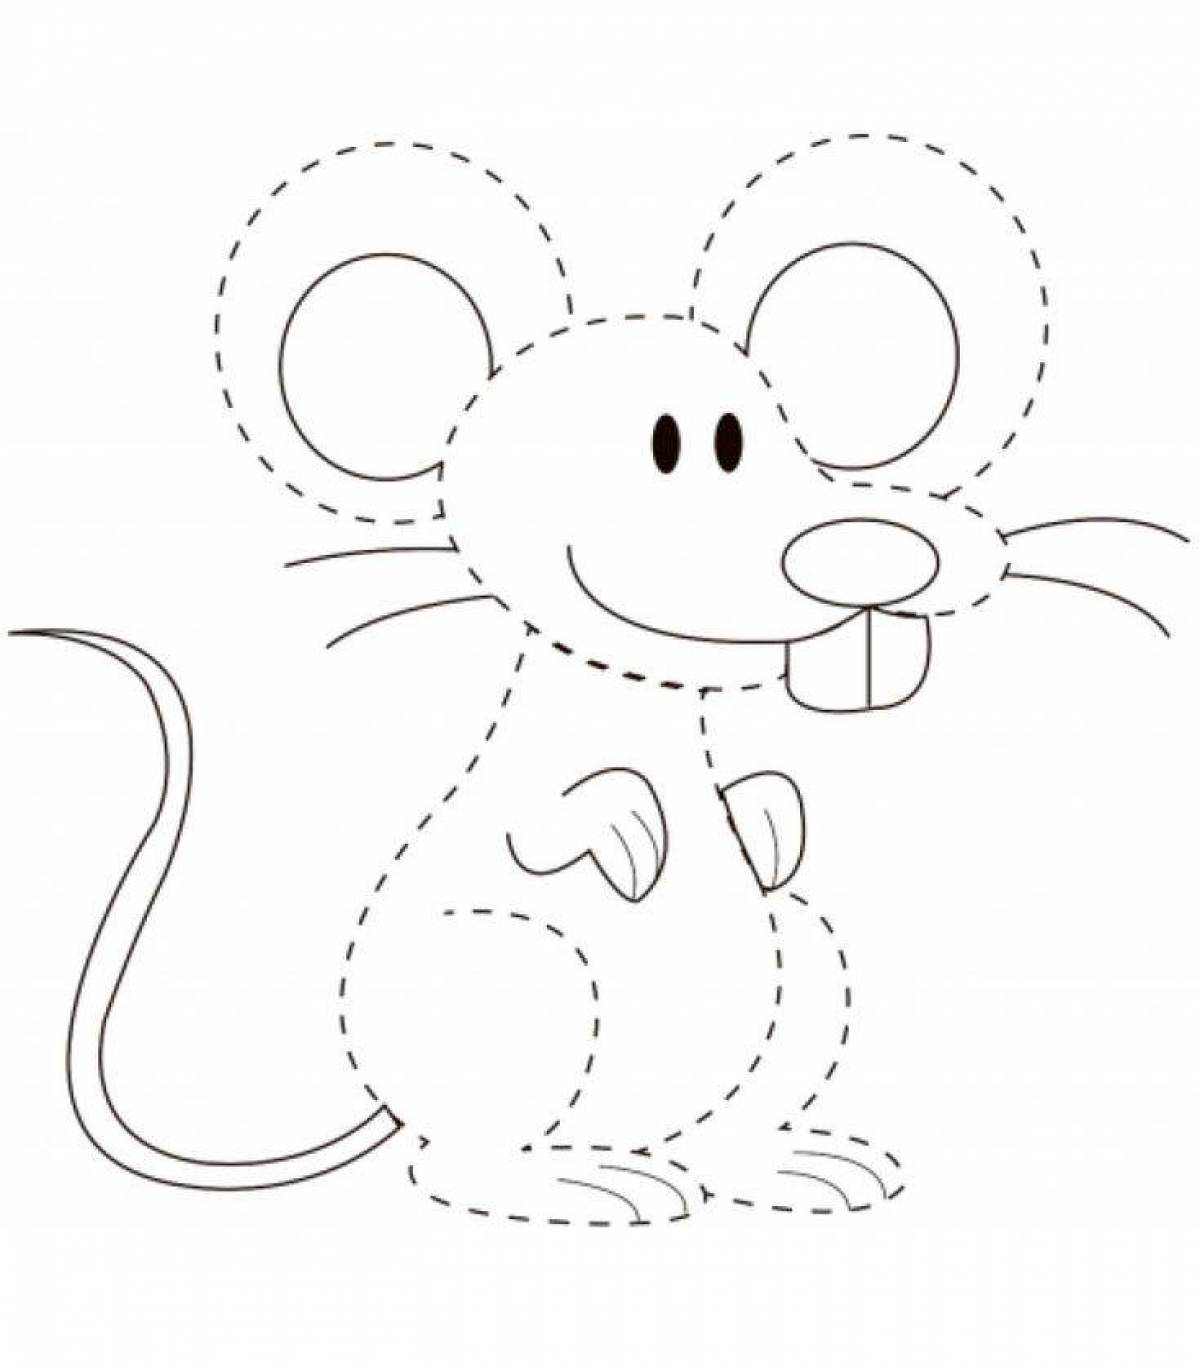 Странная раскраска мышонка